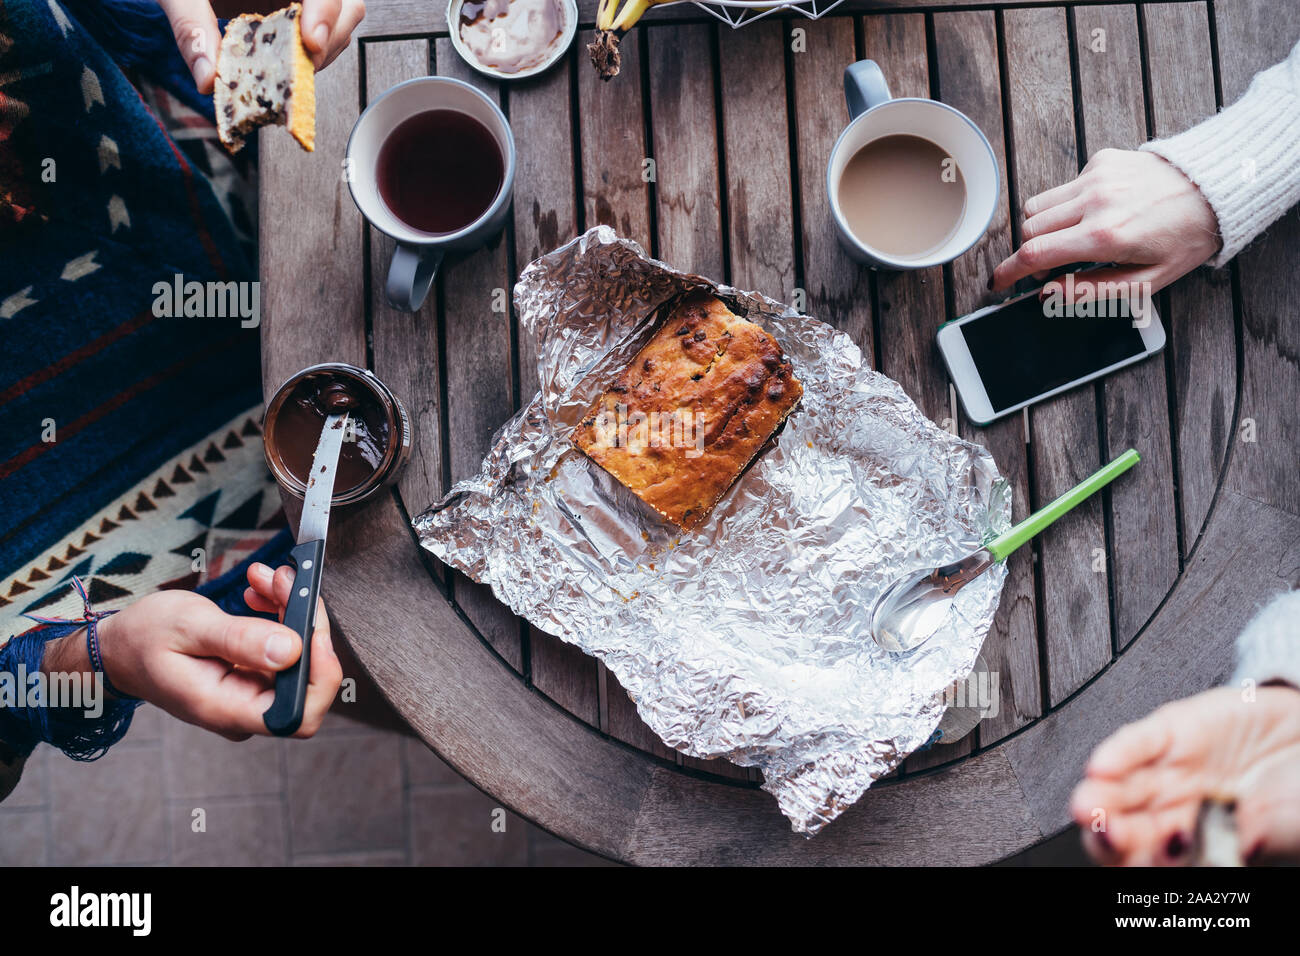 Ansicht von oben Frühstückstisch mit Smartphone und Hände von Paar in Essen - gesunde Ernährung, Technik, Qualität Konzept Stockfoto